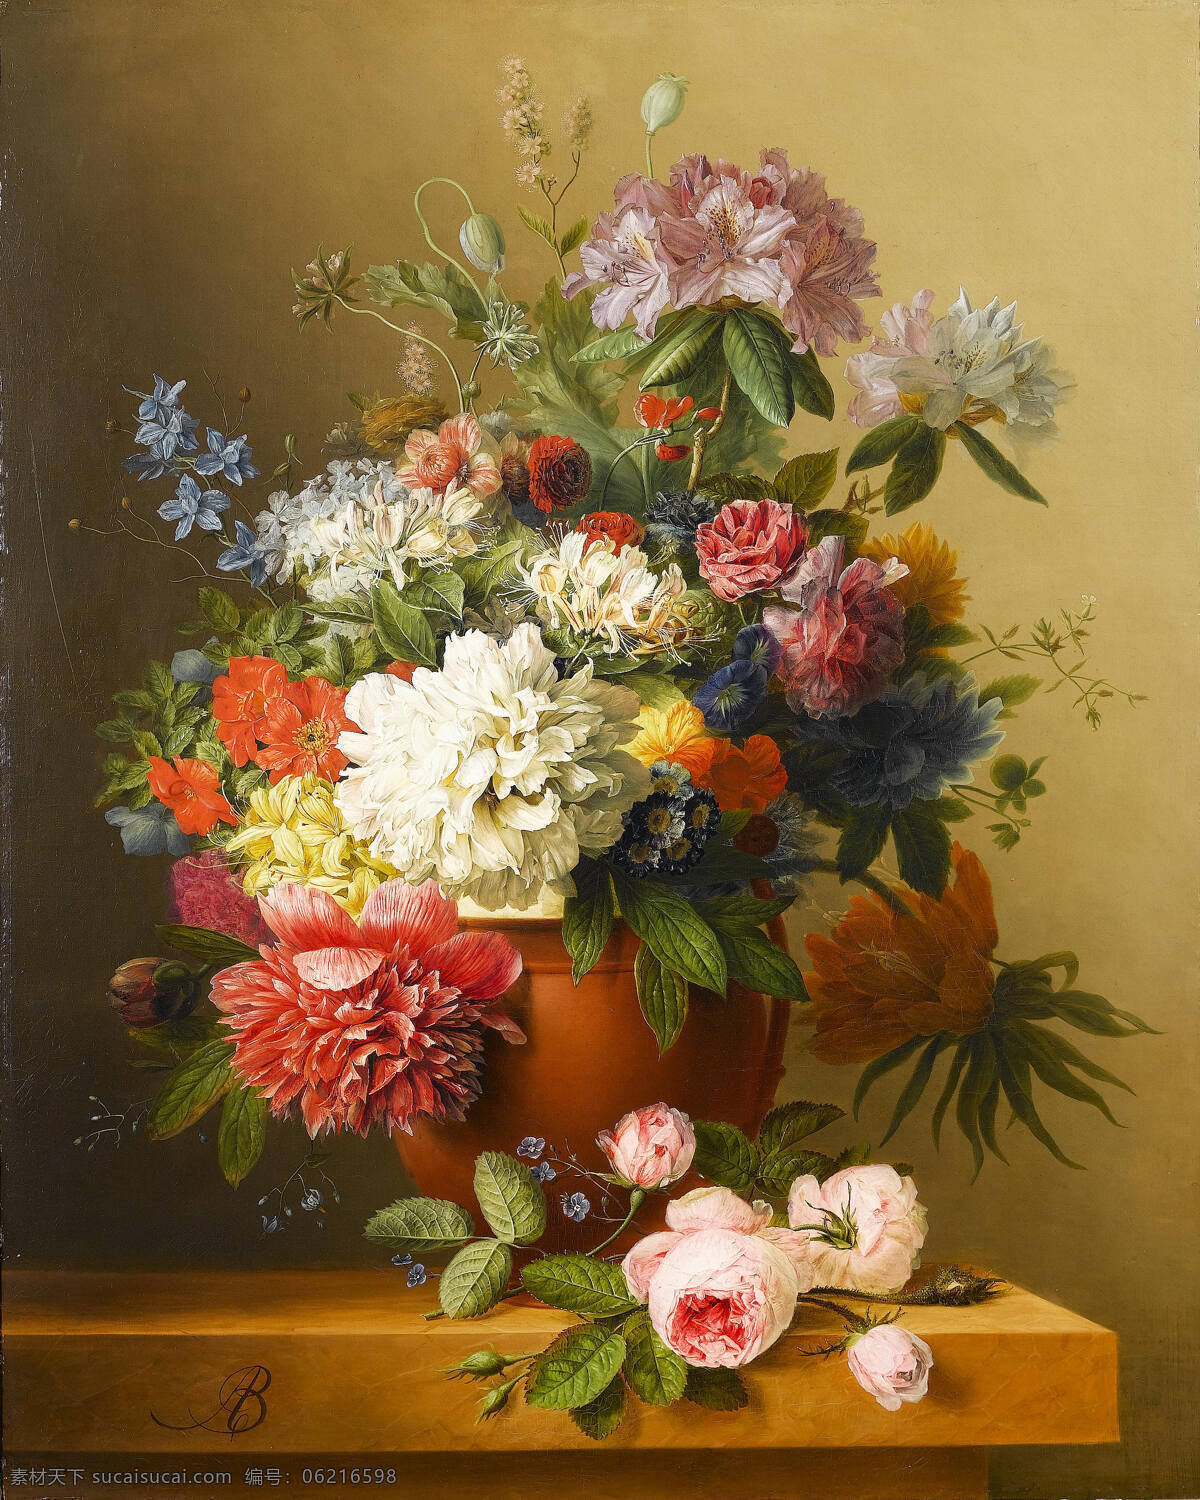 静物鲜花 混搭鲜花 花盆 桌子 永恒之美 19世纪油画 油画 绘画书法 文化艺术